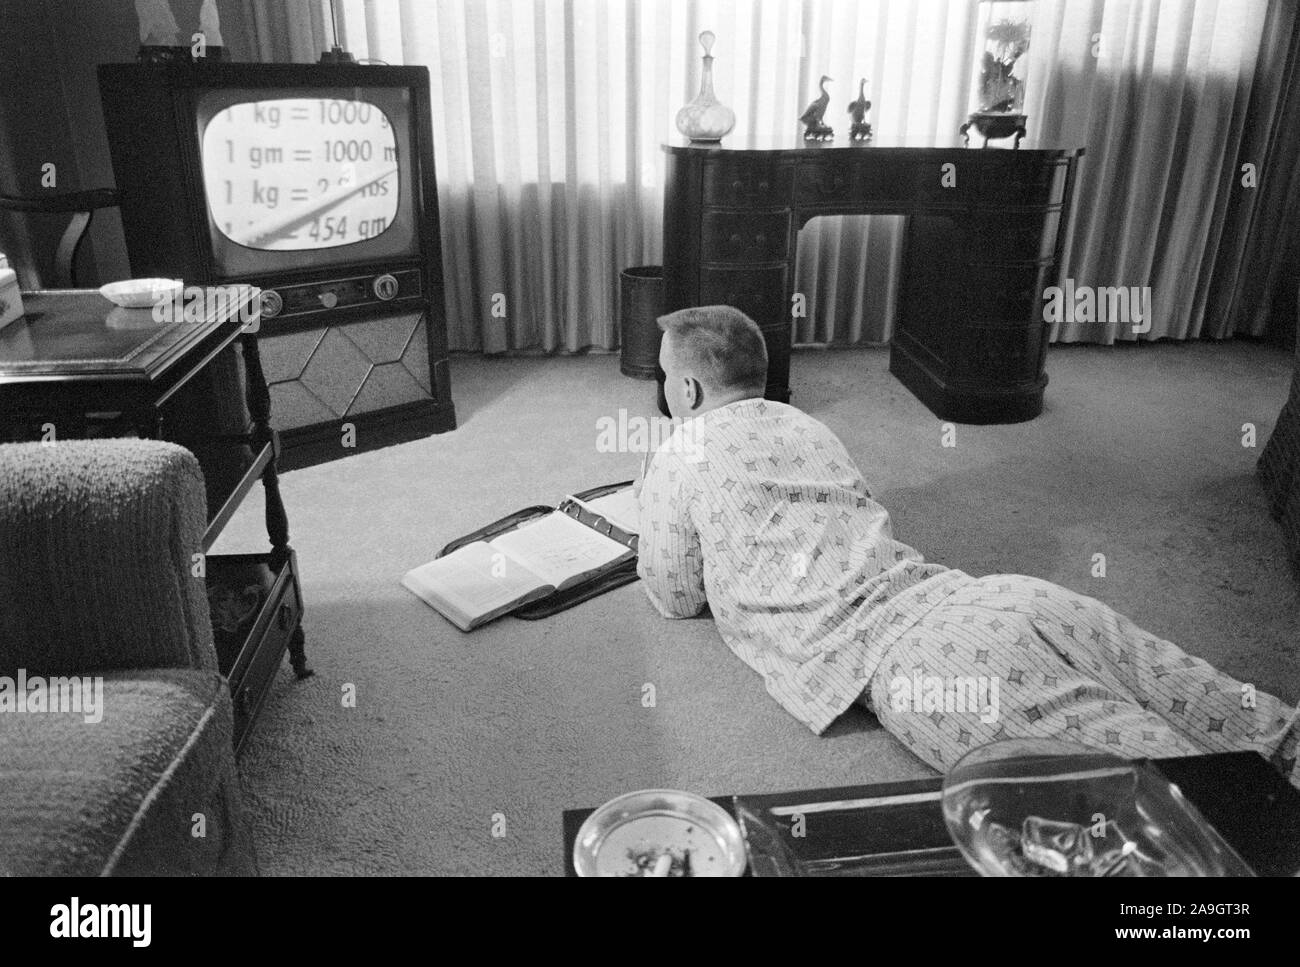 Pyjama gekleidete junge Gebildet, über das Fernsehen während der Periode, die Schulen geschlossen, damit die Integration zu vermeiden Waren, Little Rock, Arkansas, USA, Foto: Thomas J. O'Halloran, September 1958 Stockfoto